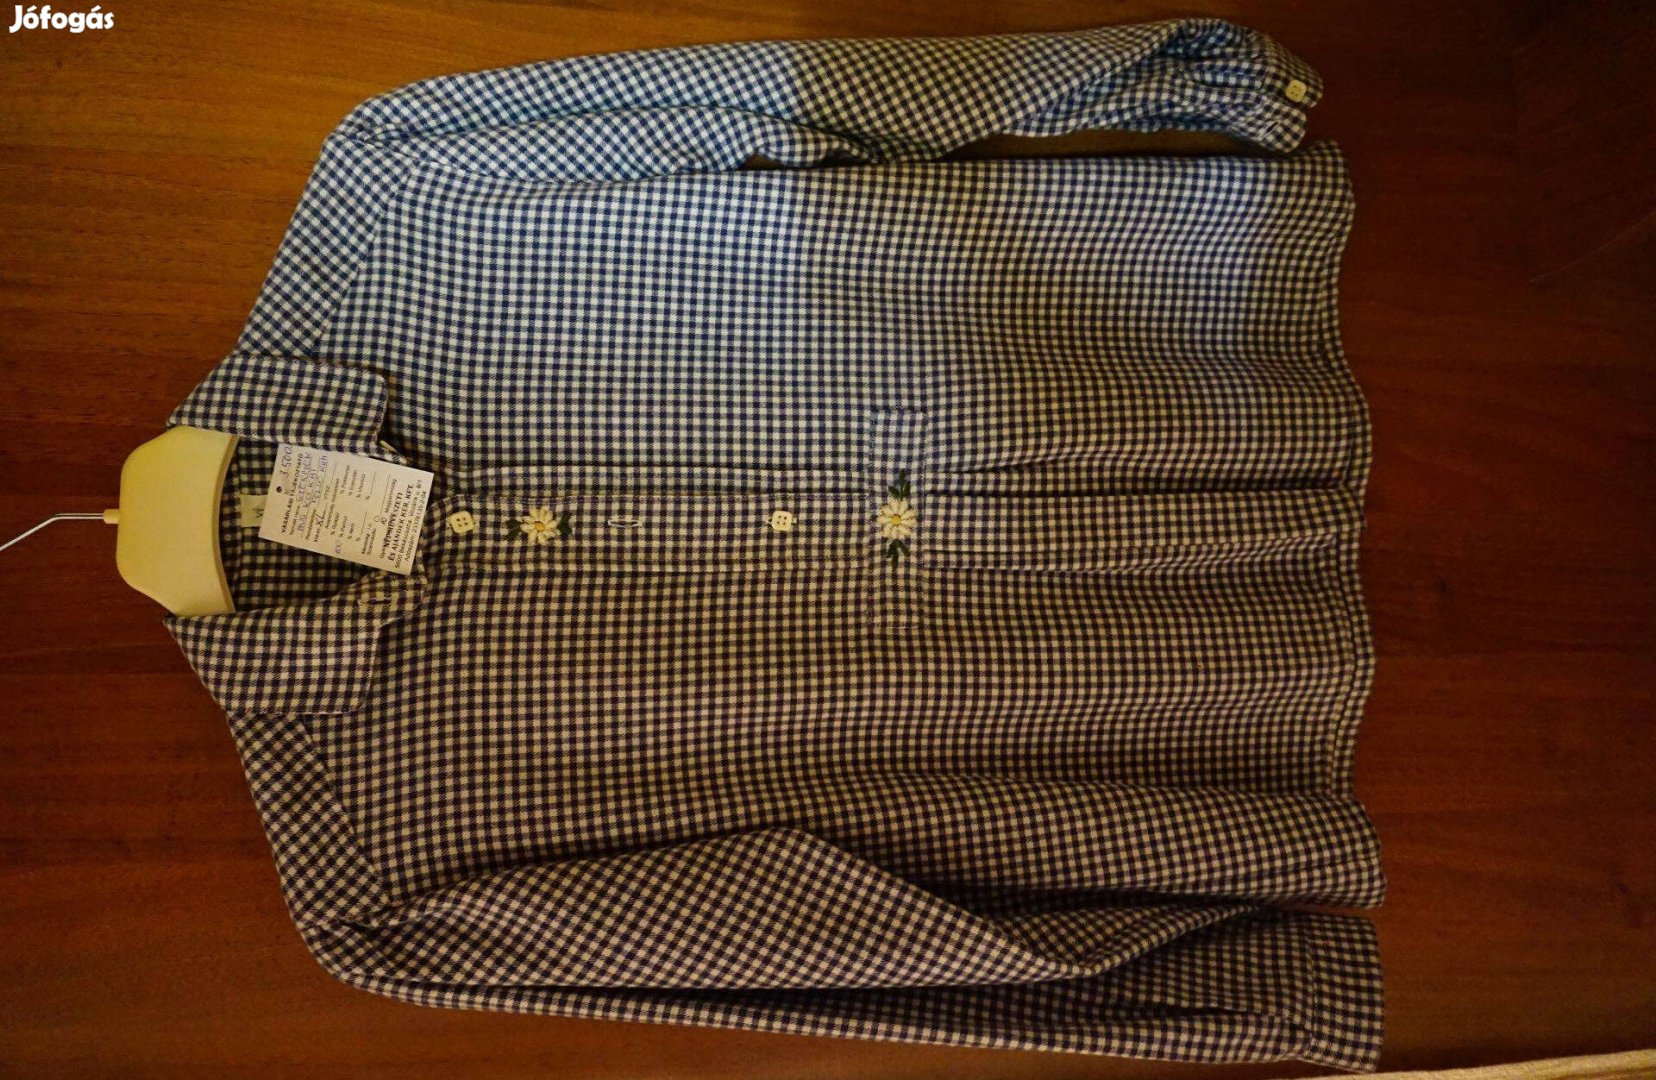 14-15 éves fiúnak kockás ing a gomblyukak között hímezve eladó